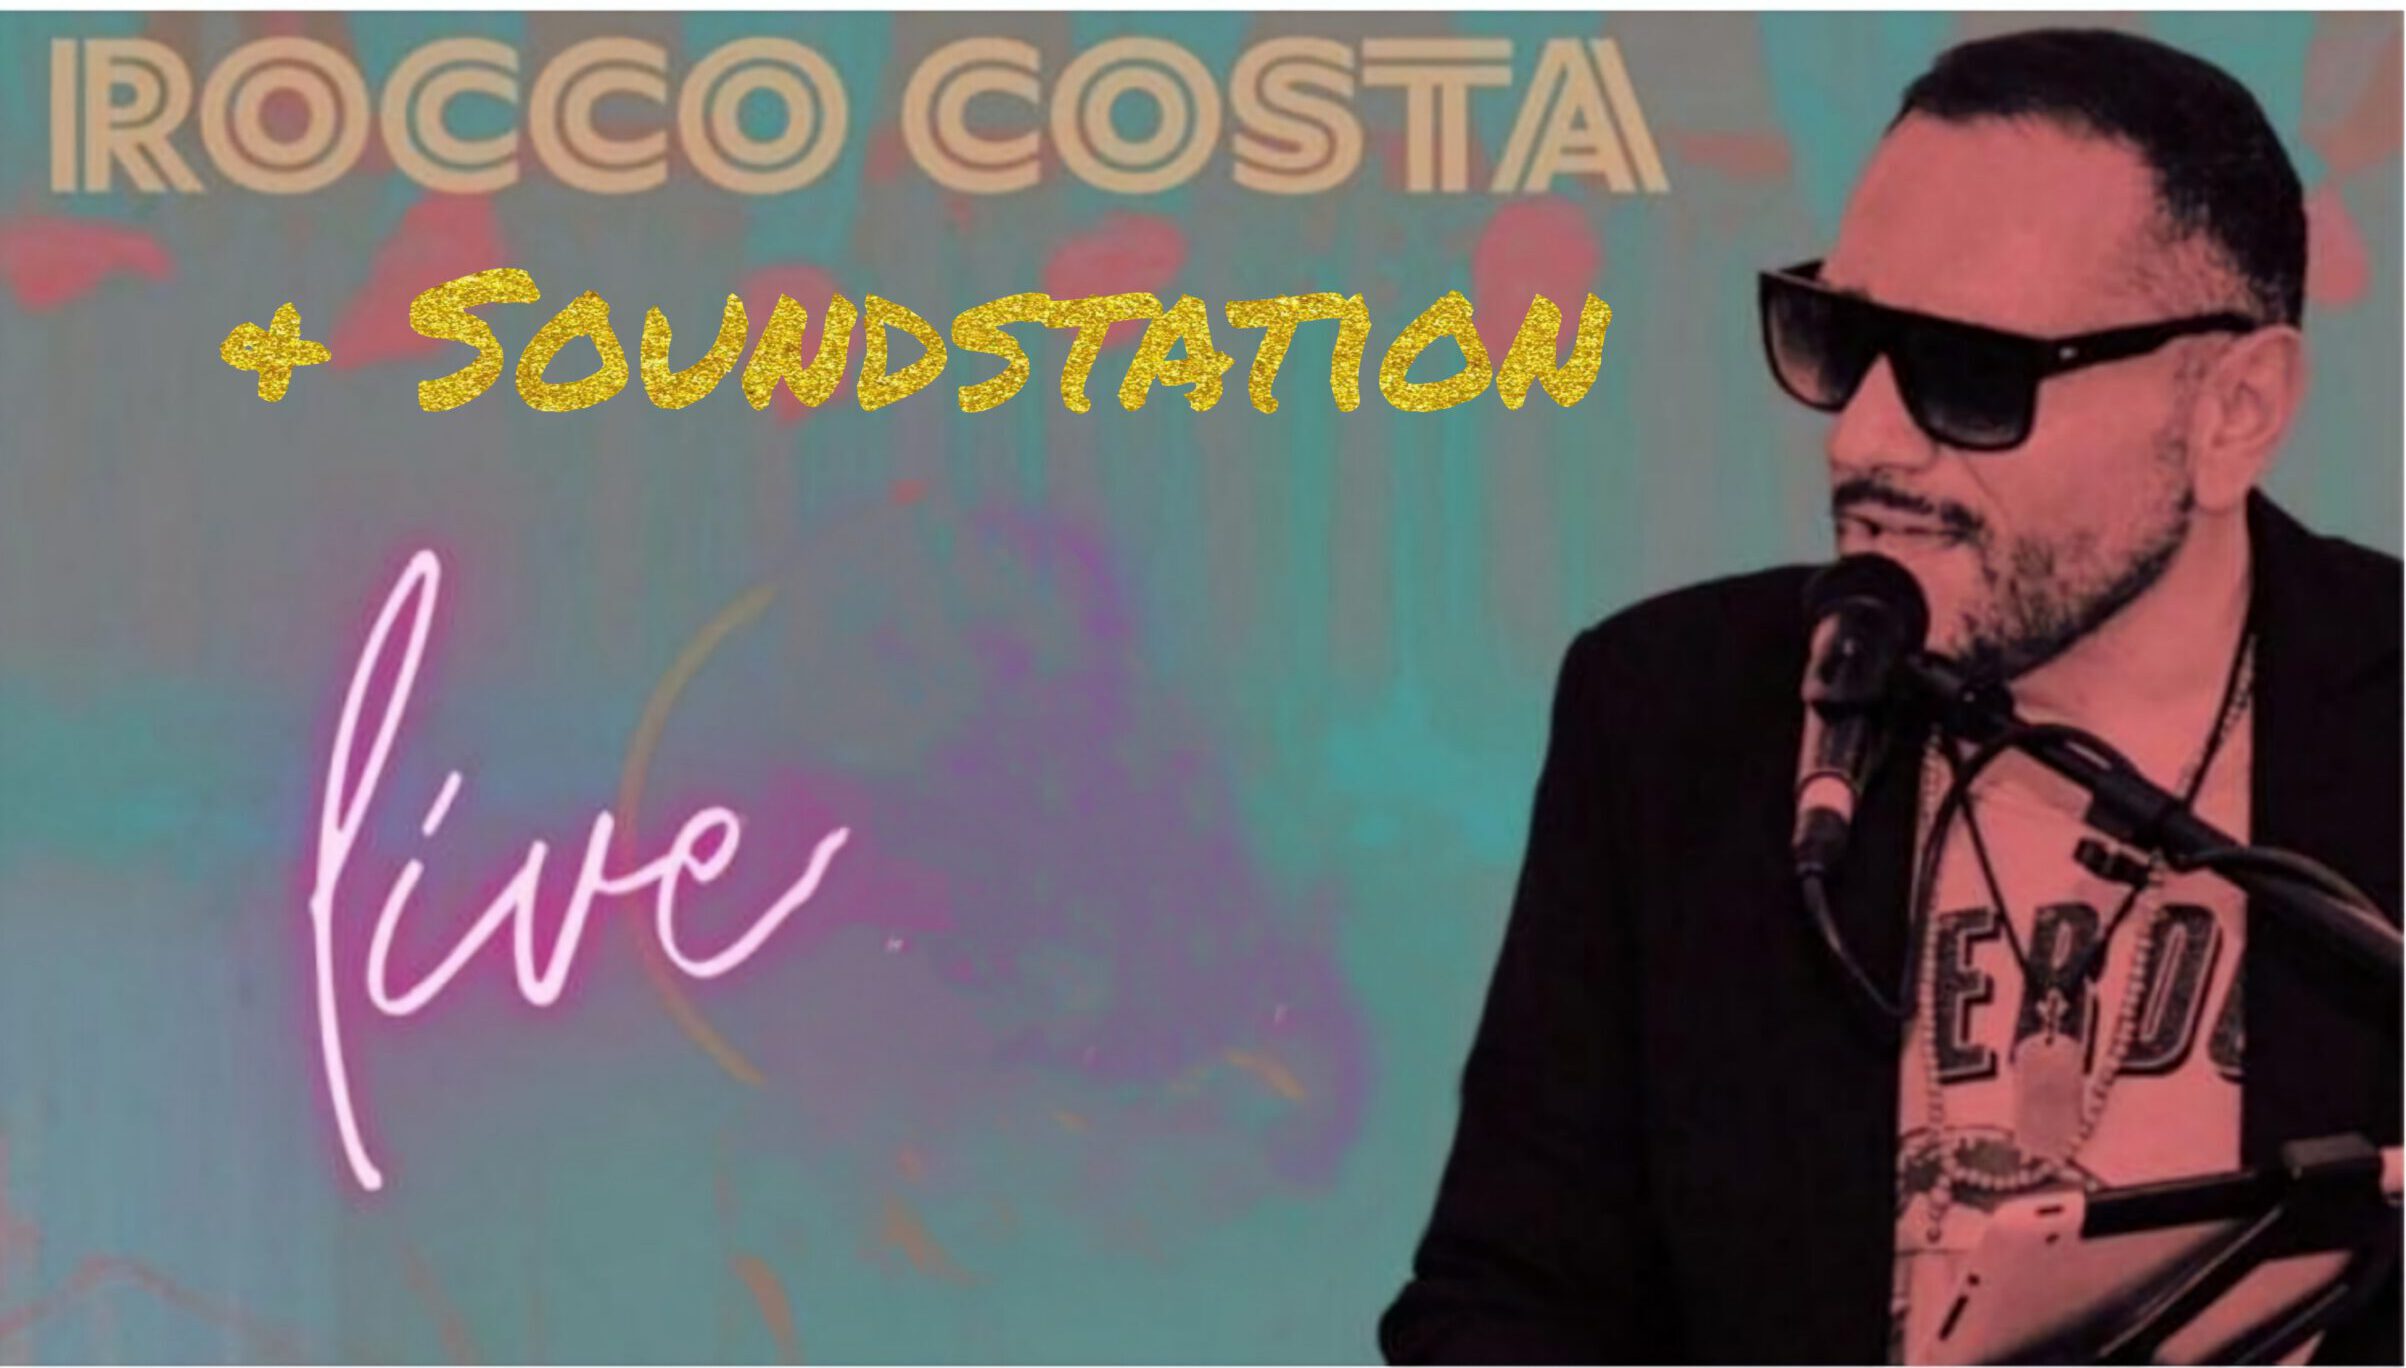 Rocco Costa